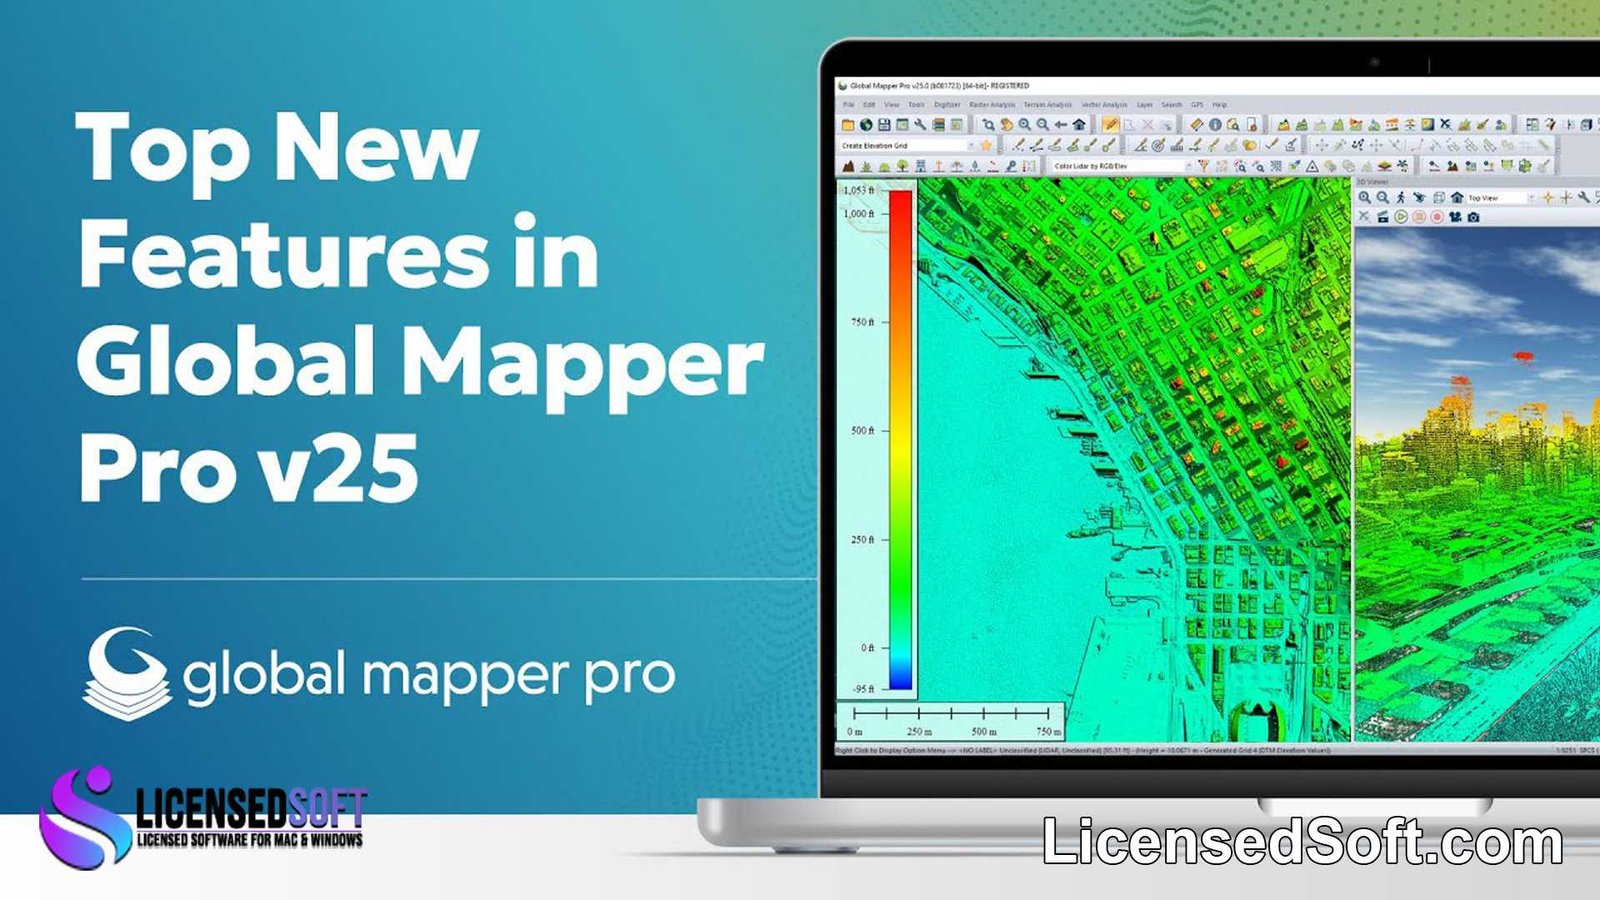 Global Mapper Pro 25 Lifetime License By LicensedSoft